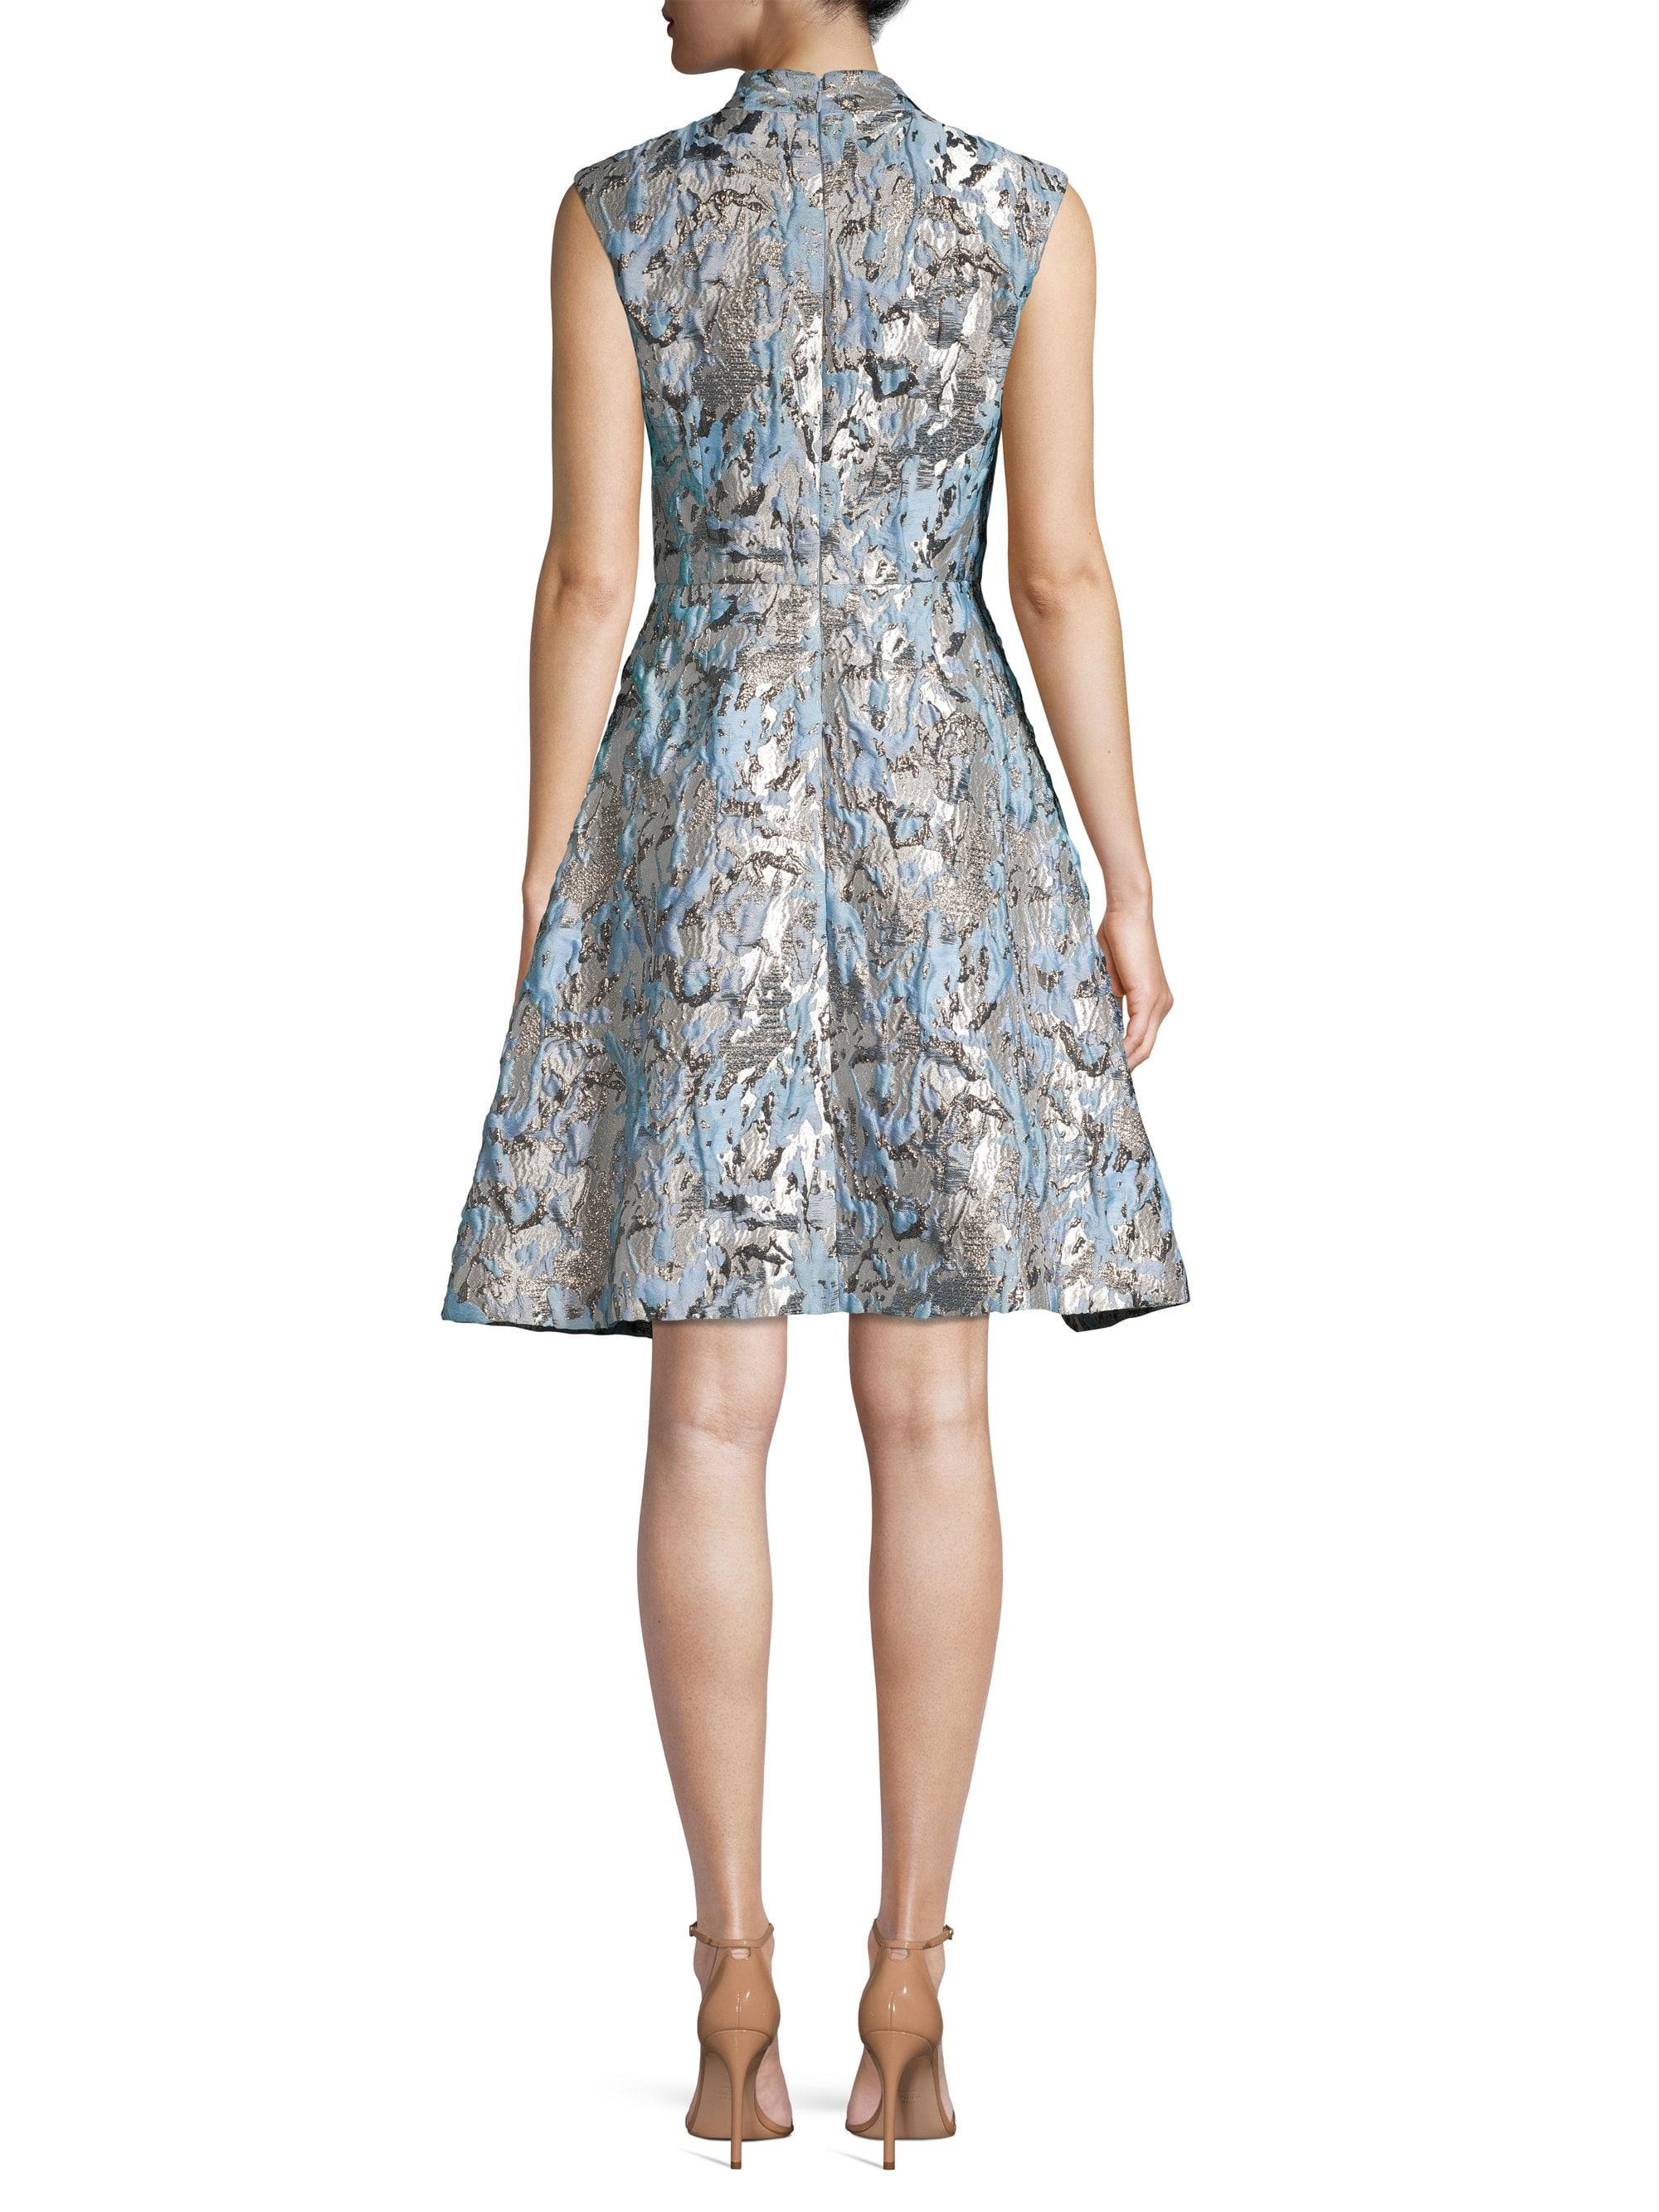 Aidan Mattox Metallic Jacquard Fit-&-flare Dress in Blue - Lyst